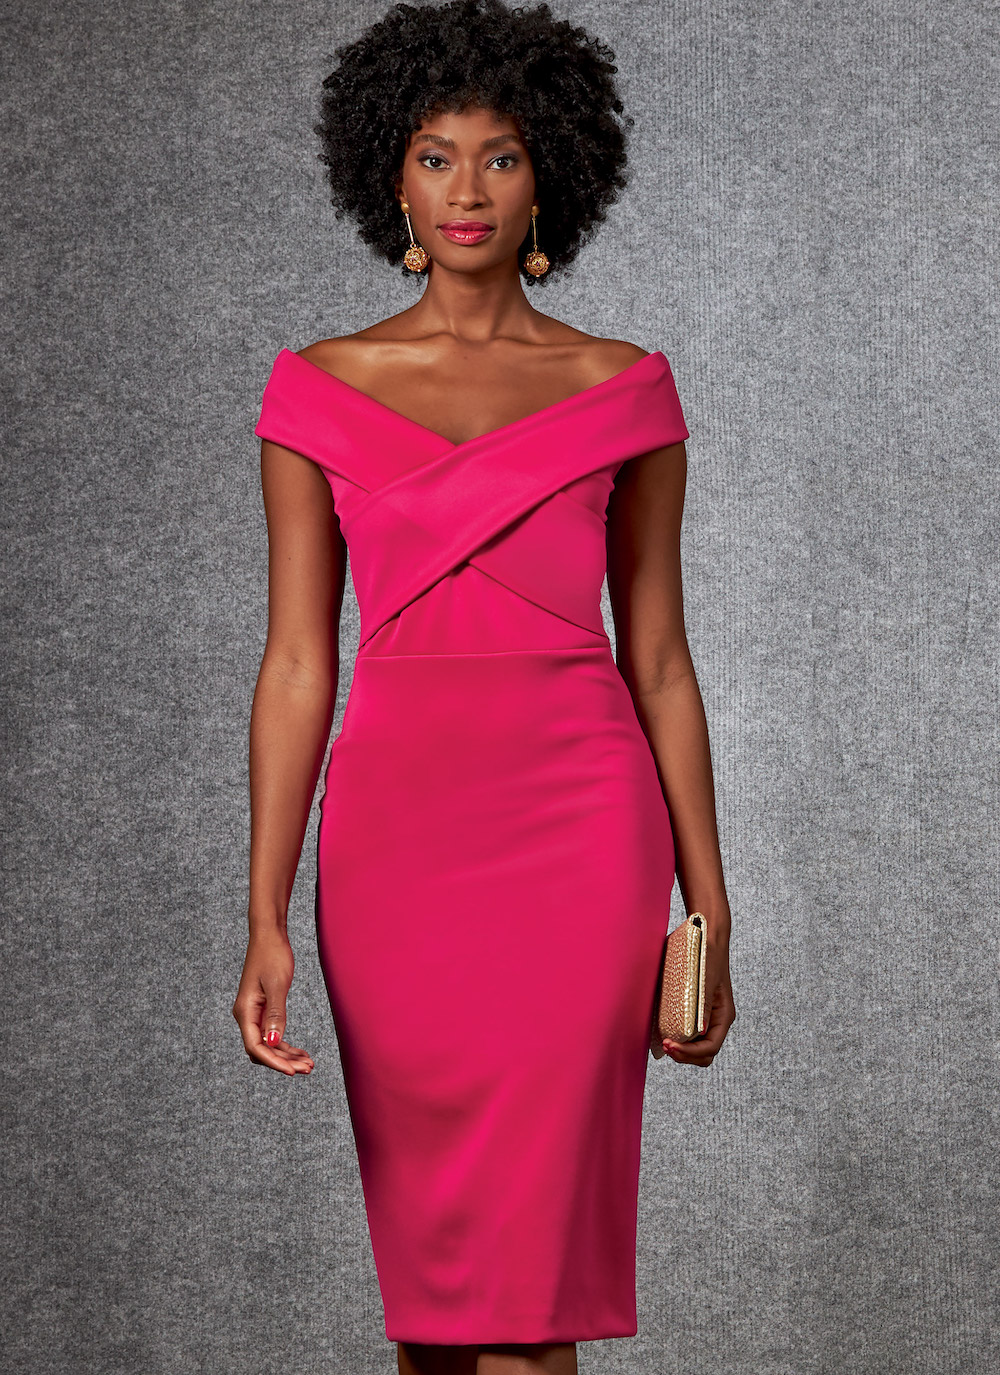 Vogue® Patterns Papierschnittmuster Damen Kleid V1674